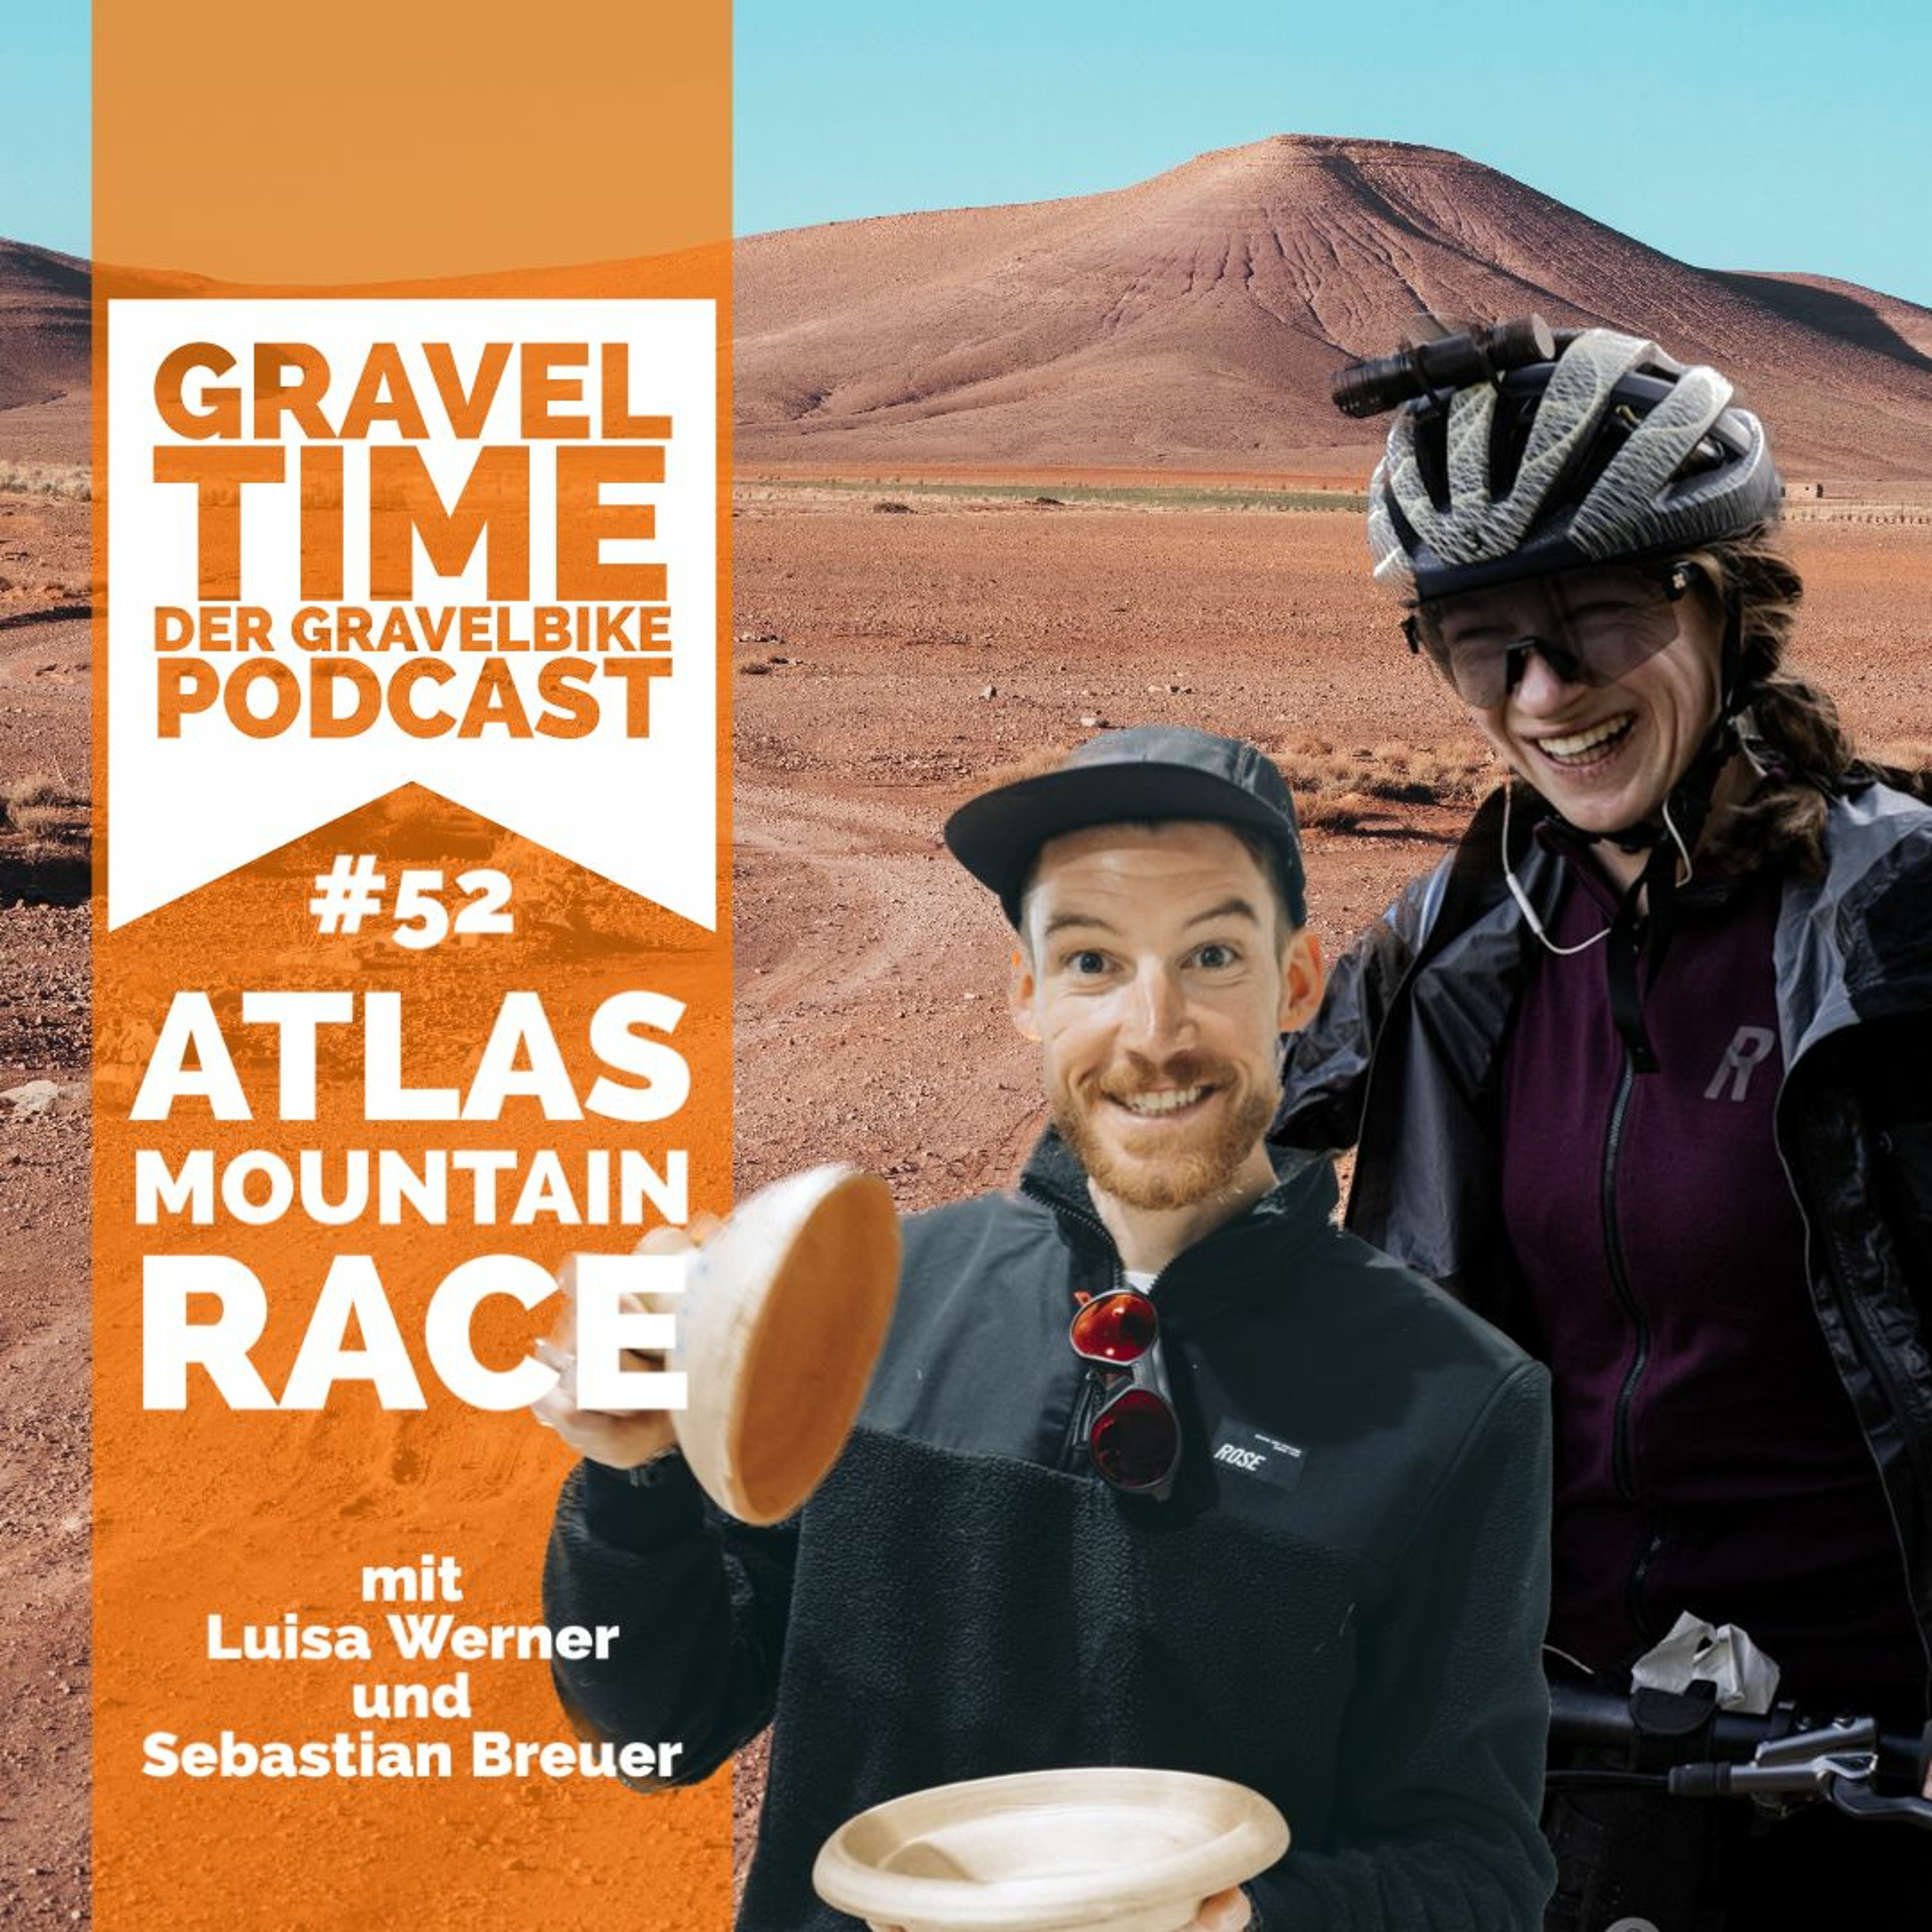 GravelTIME #52 Atlas Mountain Race mit Luisa Werner und Sebastian Breuer